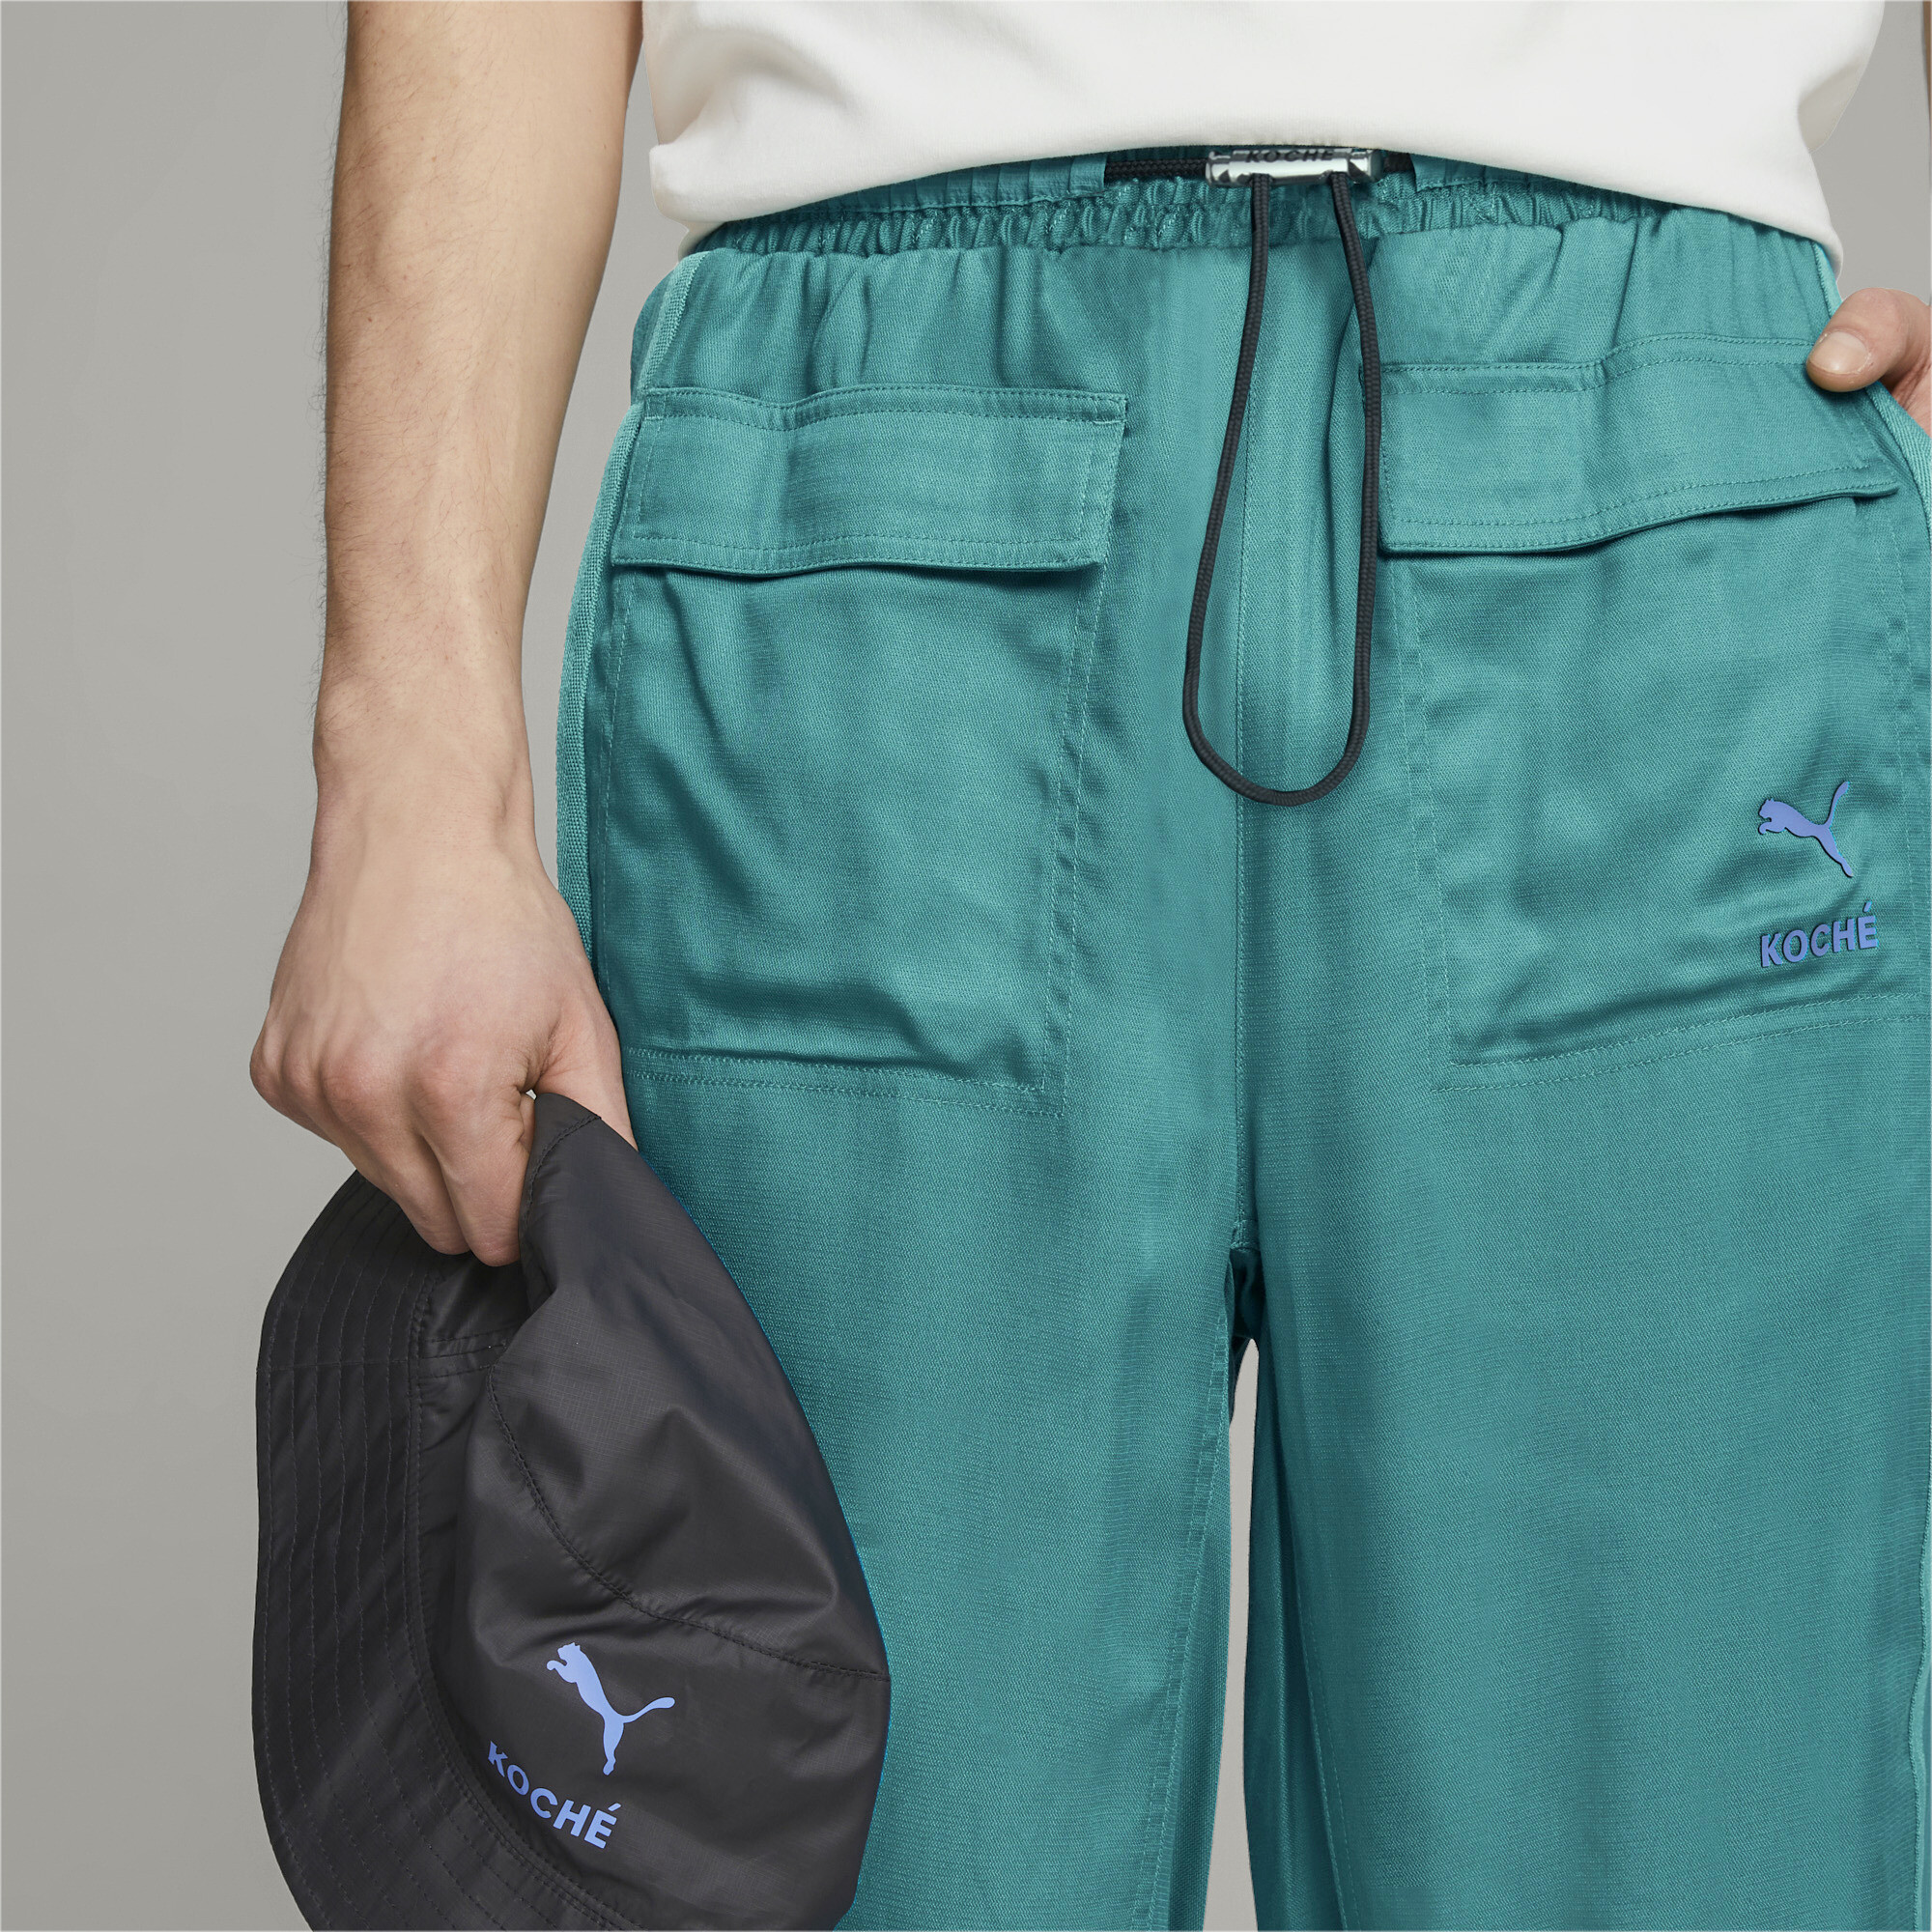 Men's PUMA X KOCHÃ Reversible Pants In Green, Size Medium